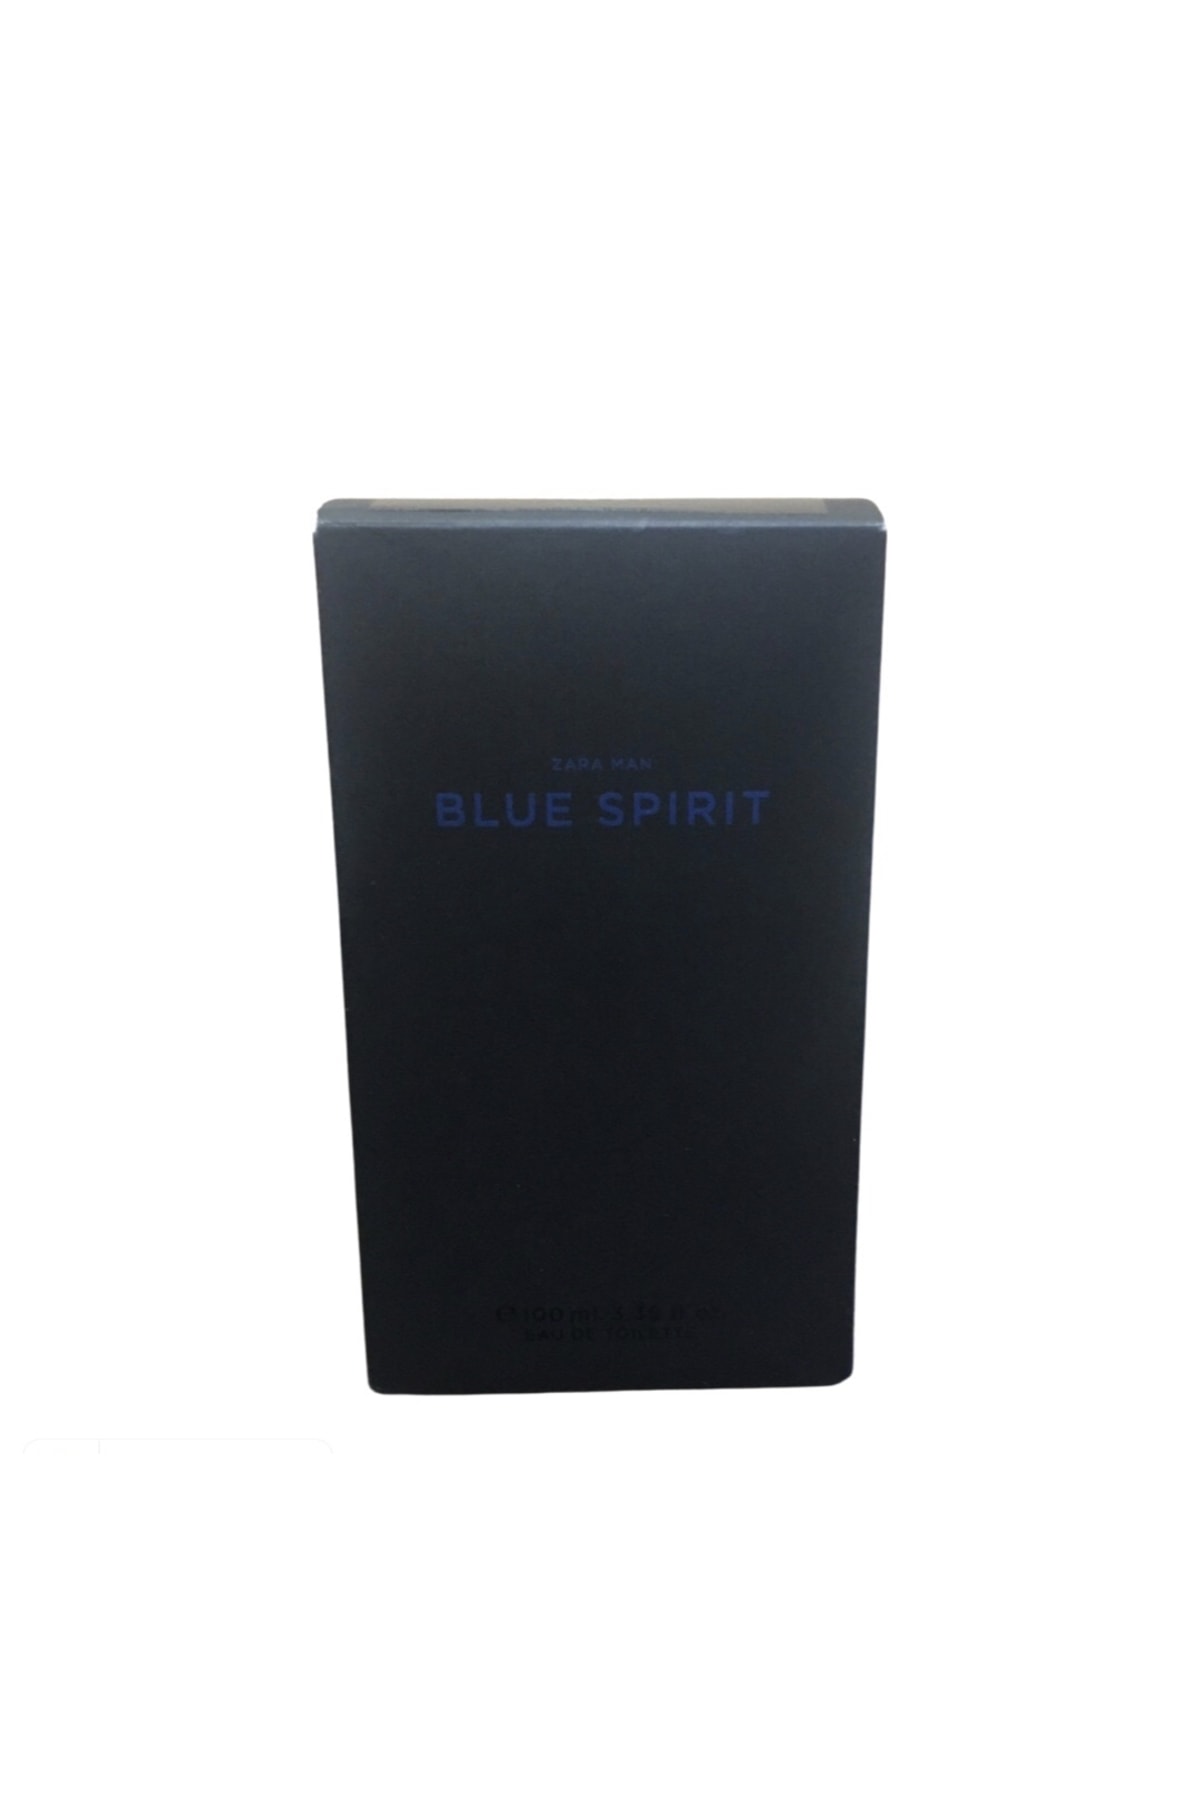 Zara Man Blue Spirit ادوتویلت 100 Ml (3.38 Fl. Oz).